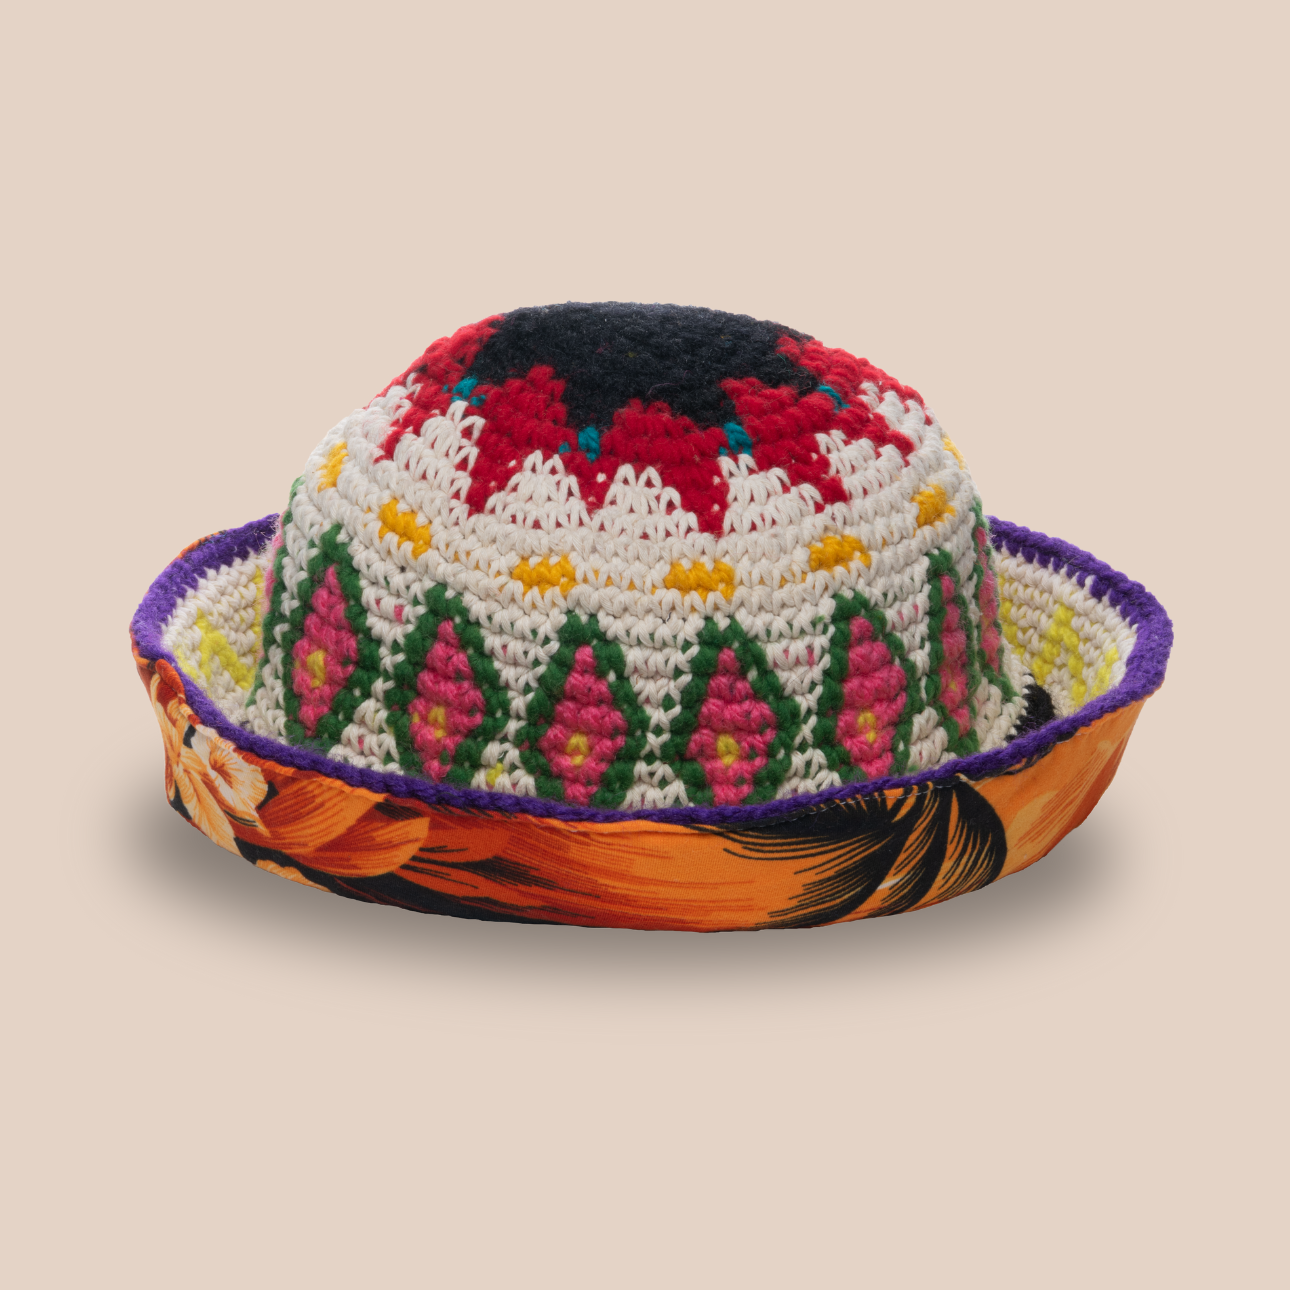 Image du bucket hat Leo de Maison Badigo, bucket hat (bob) en laine crocheté multicolore doublée unique et tendance